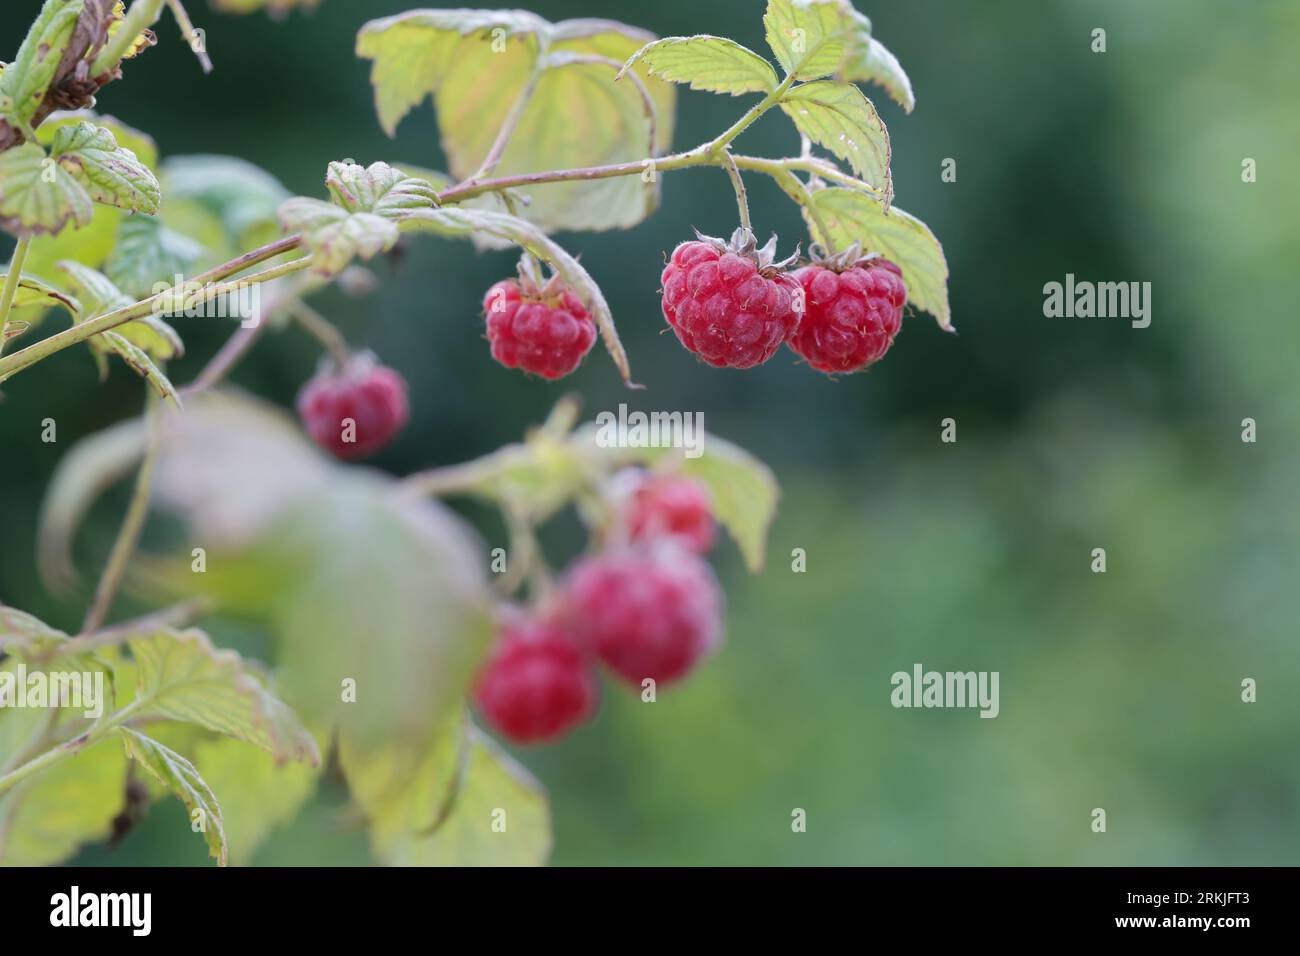 Wilde Himbeere, Himbeere, Himbeeren, Früchte, Beeren, Rubus idaeus, Raspberry, Rasp-berry, la framboise Foto Stock